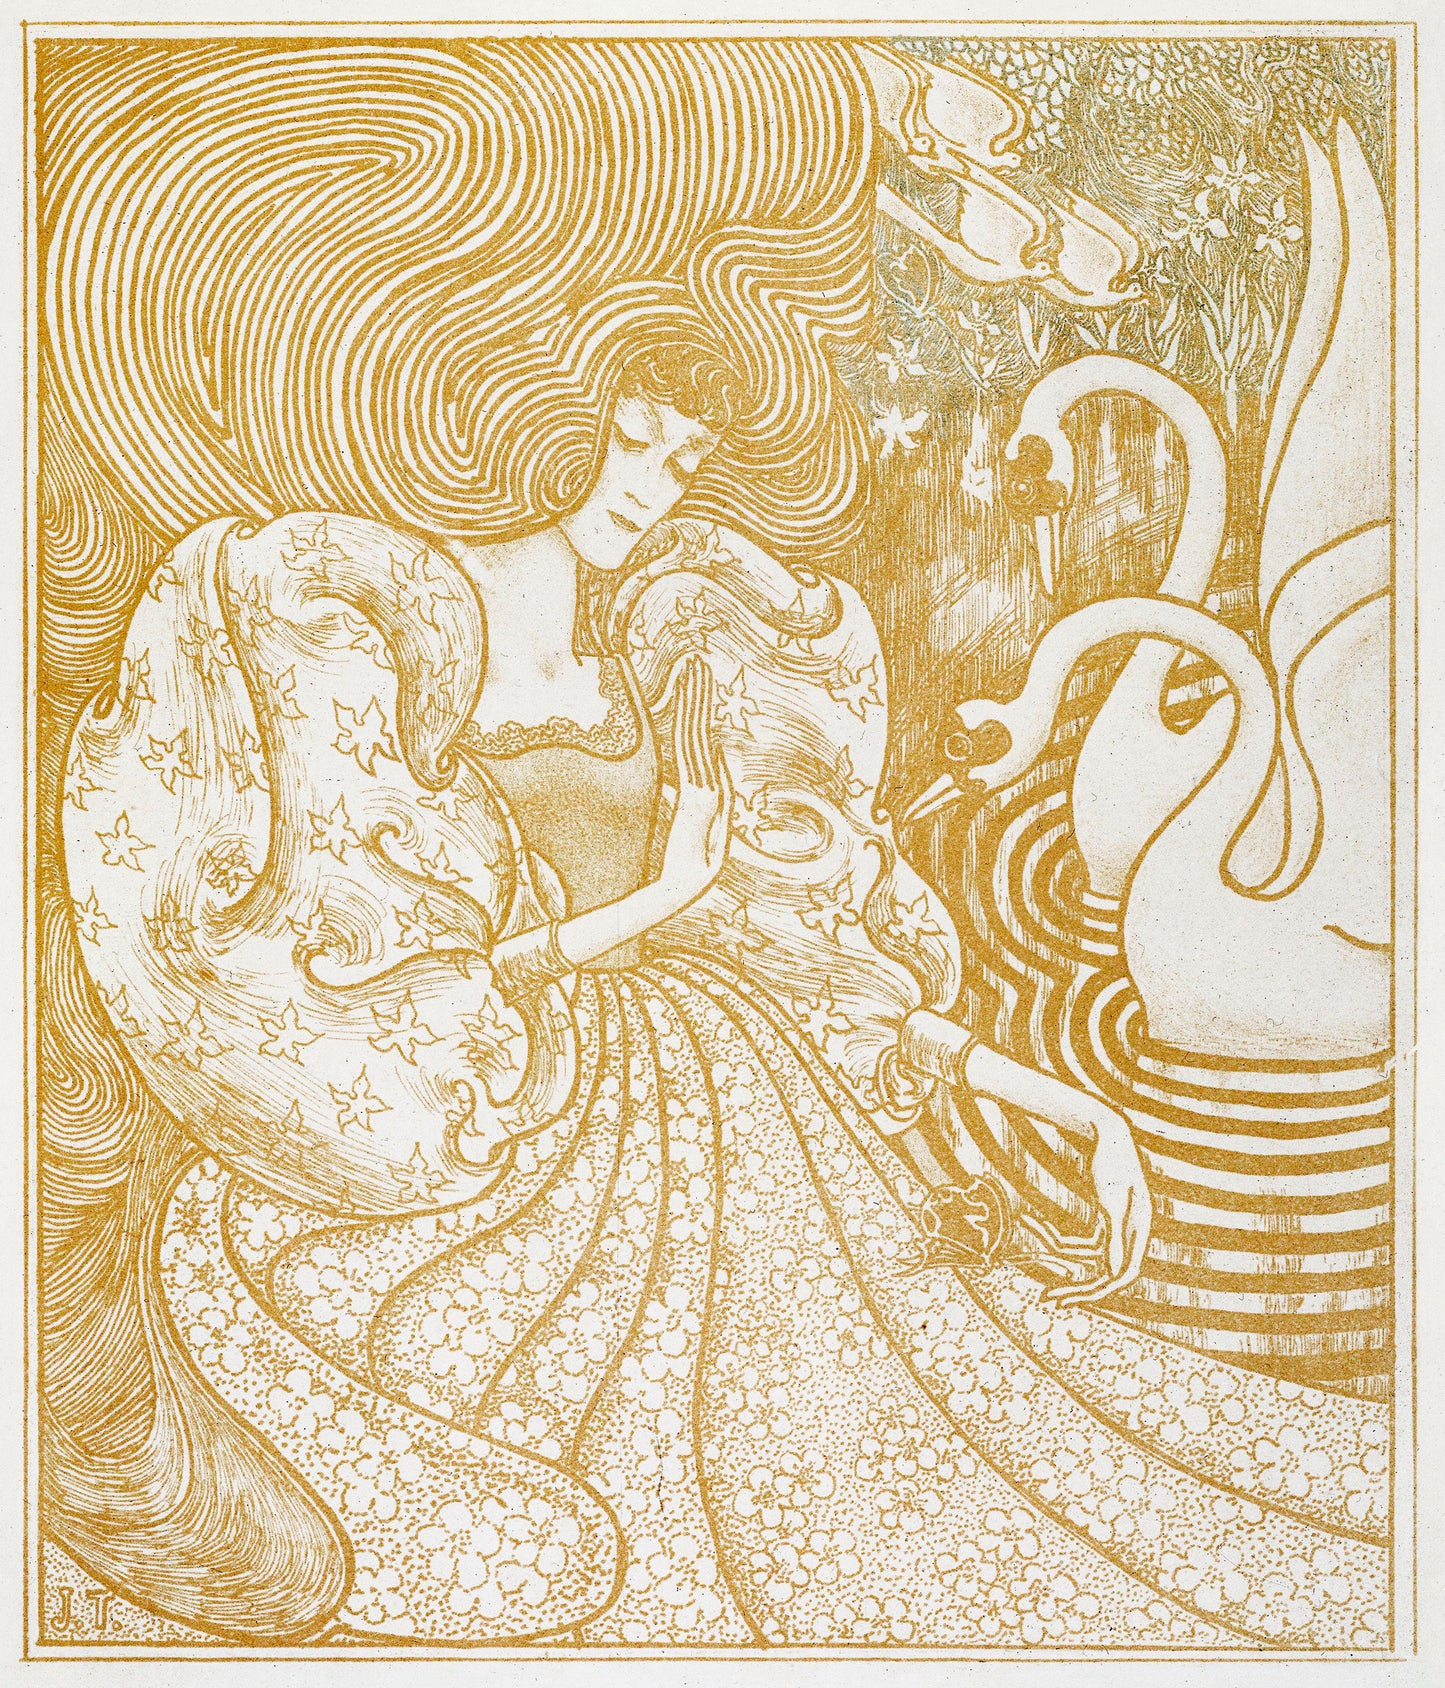 Jan Toorop Art Nouveau & Impressionist Artworks [45 Images]